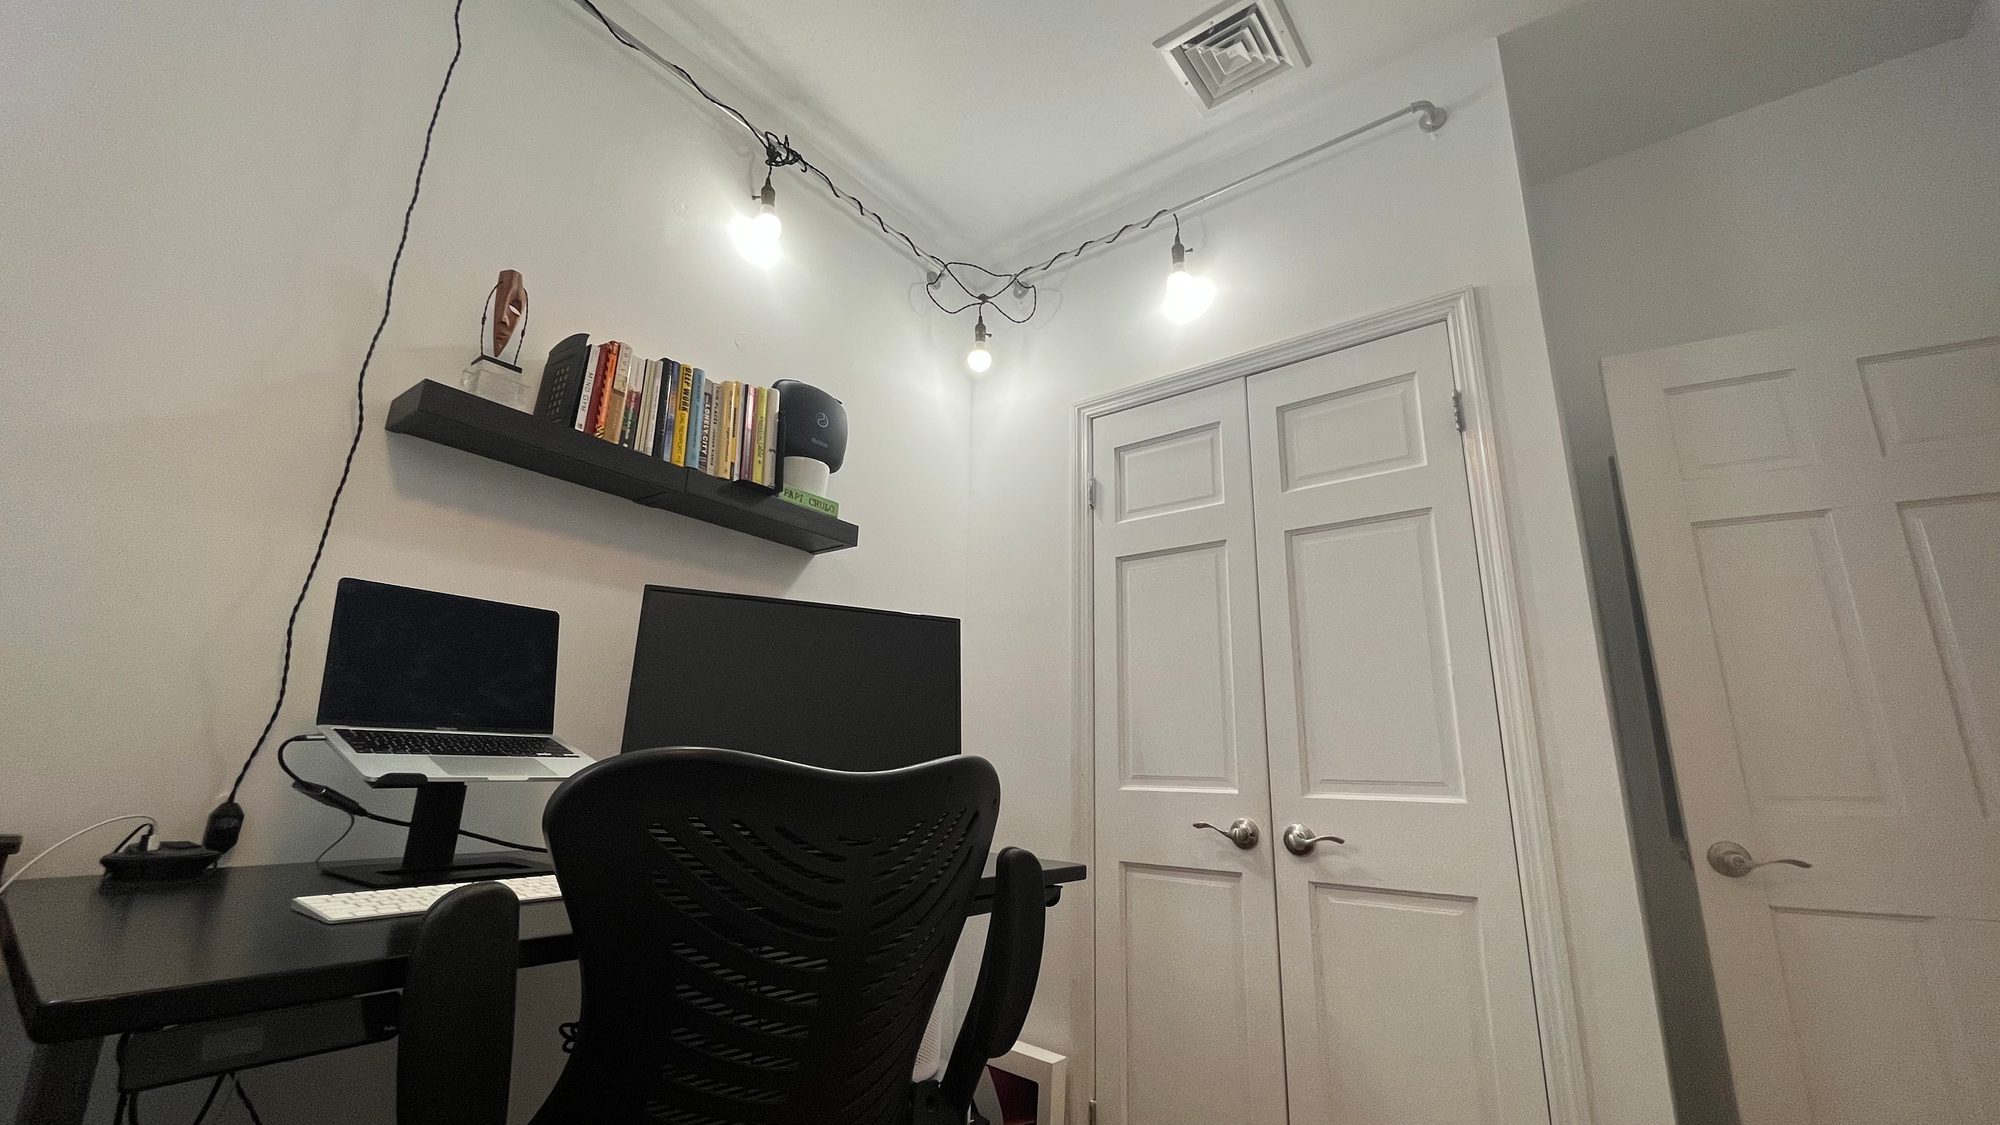 How to fix your indoor lighting